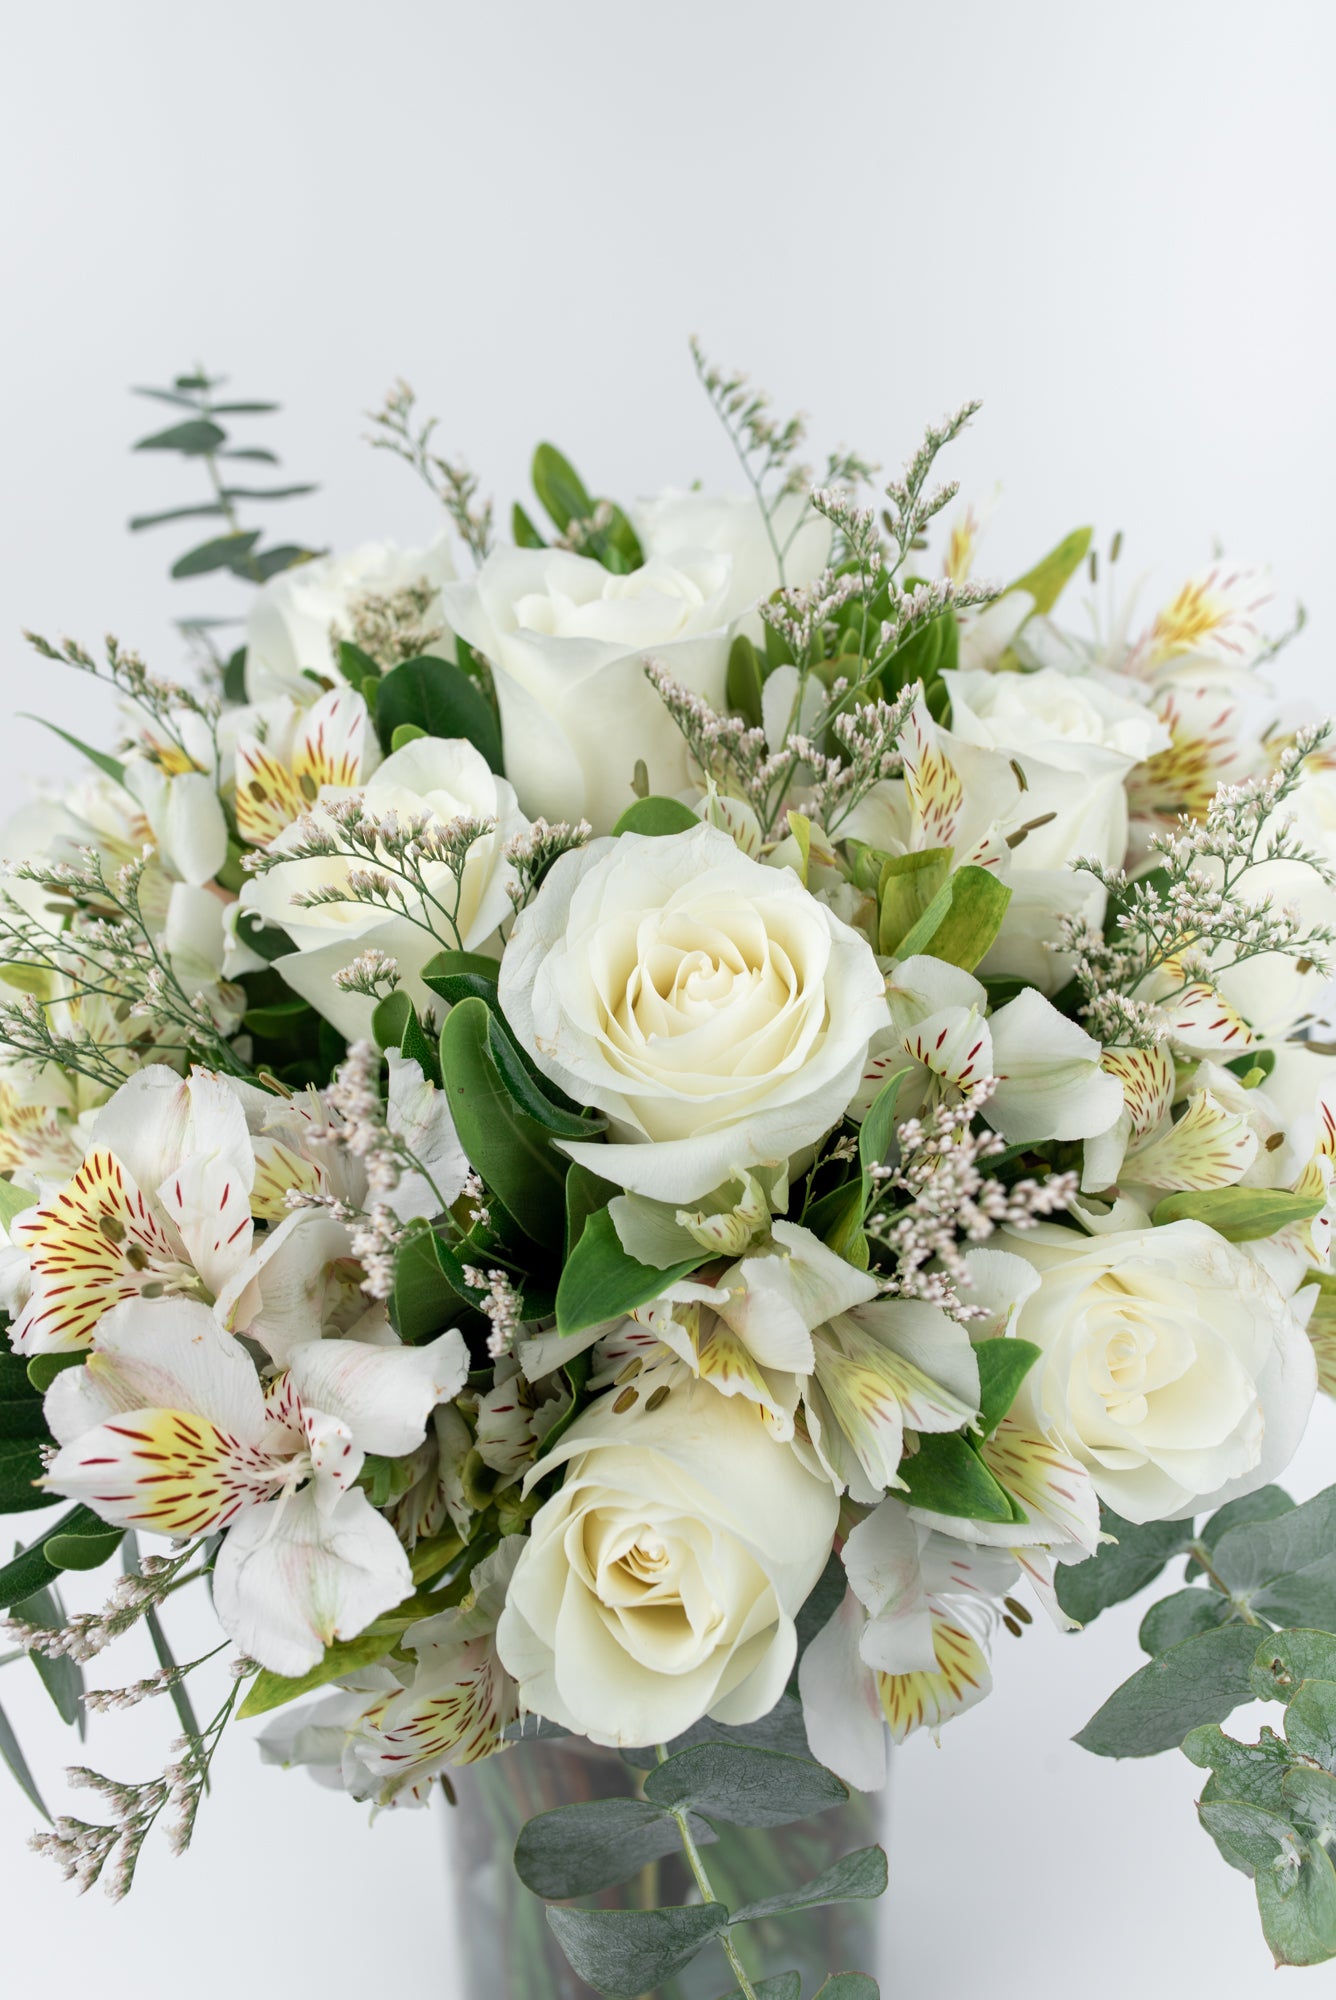 Envía Flores Rosas Blancas en Arreglos a Domicilio a Toda CDMX – Verbena  Flores | Flores a Domicilio en Todo México